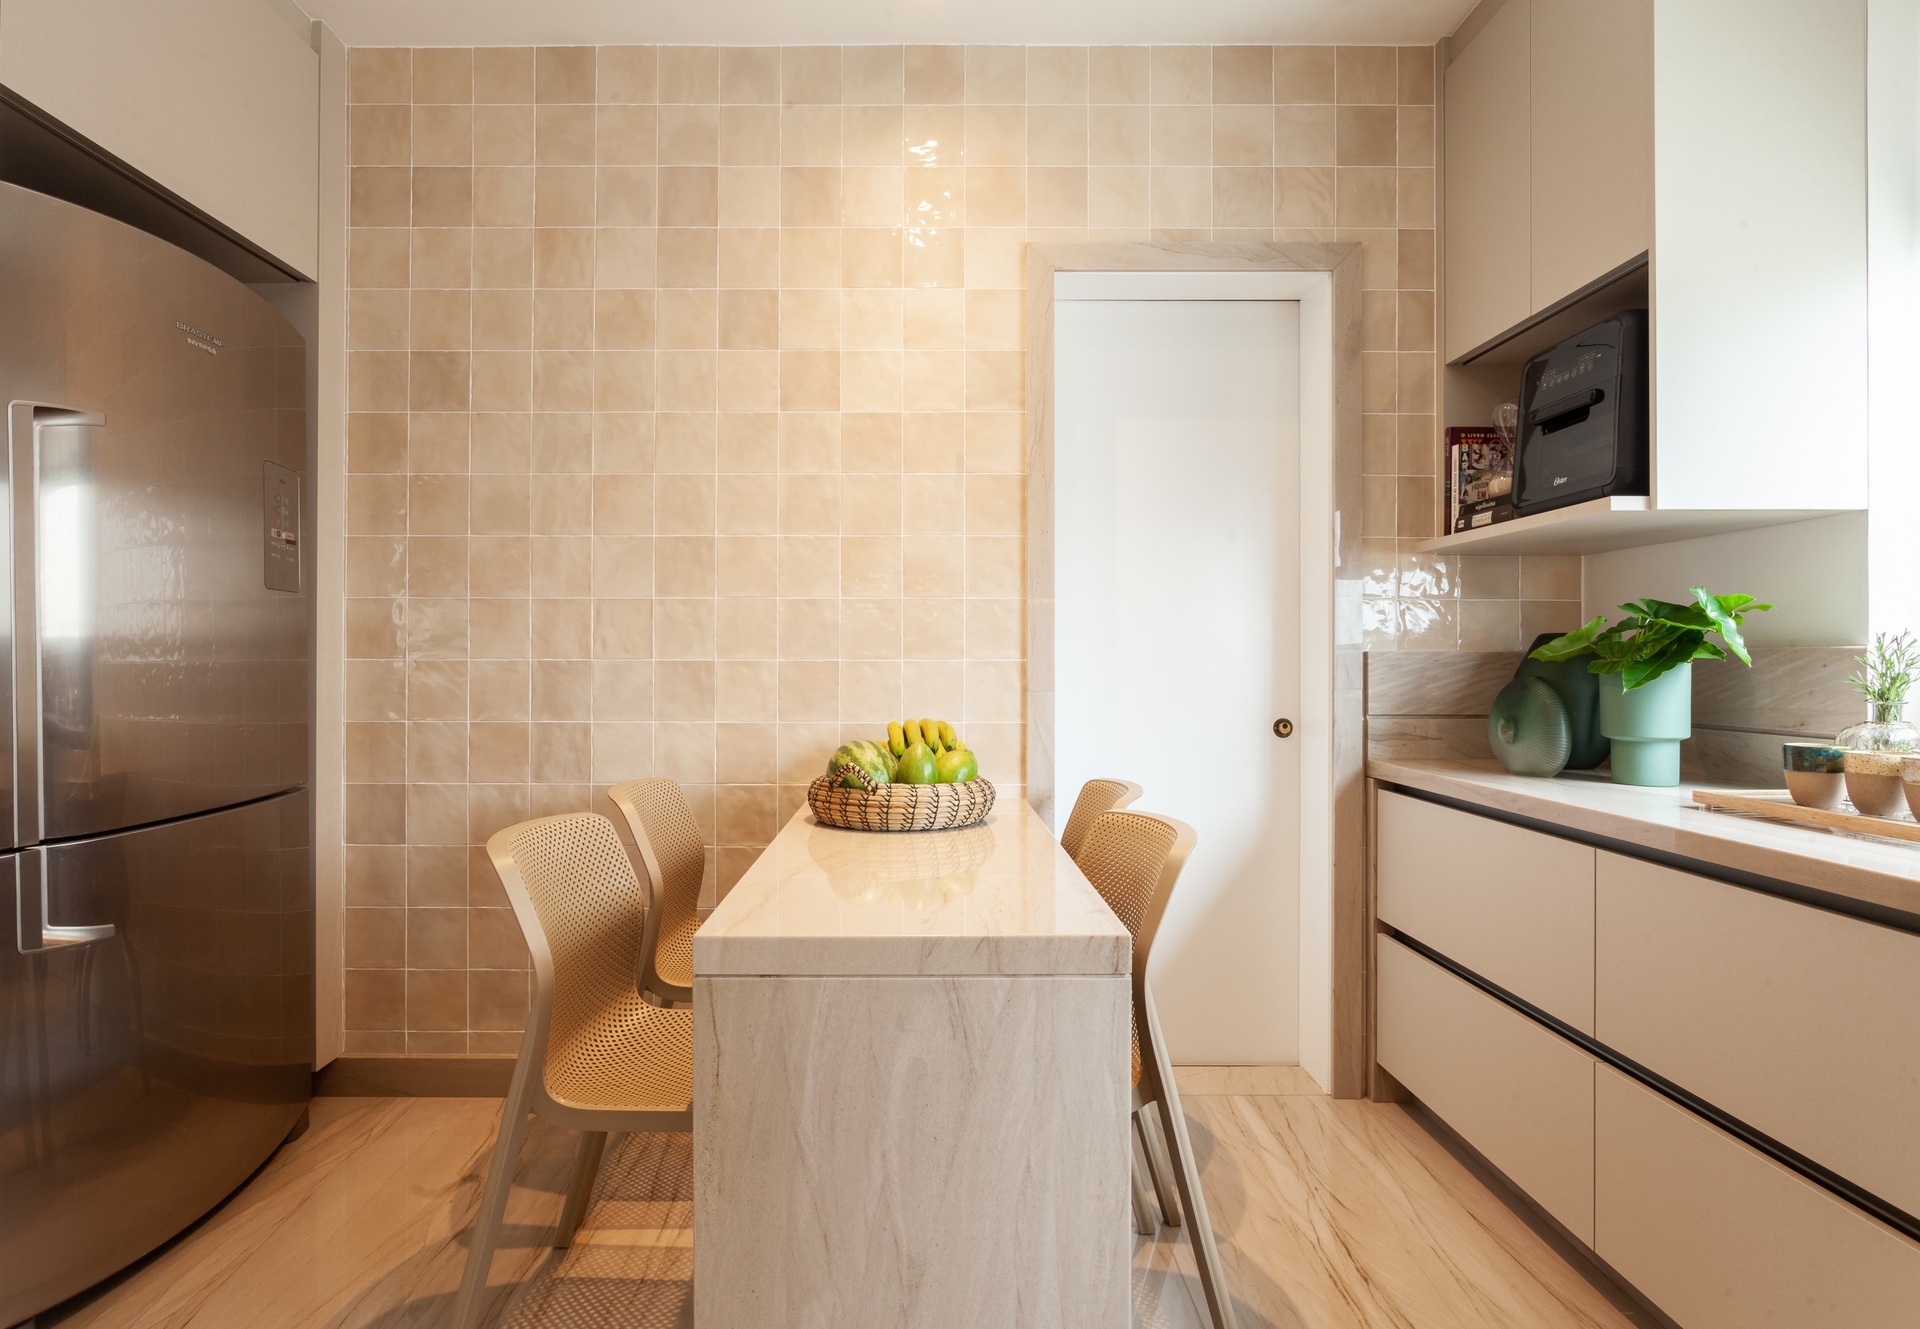 Cozinha com parede em revestimento na cor pêssego, armários claros e mesa com cadeiras. Há uma geladeira em aço inox